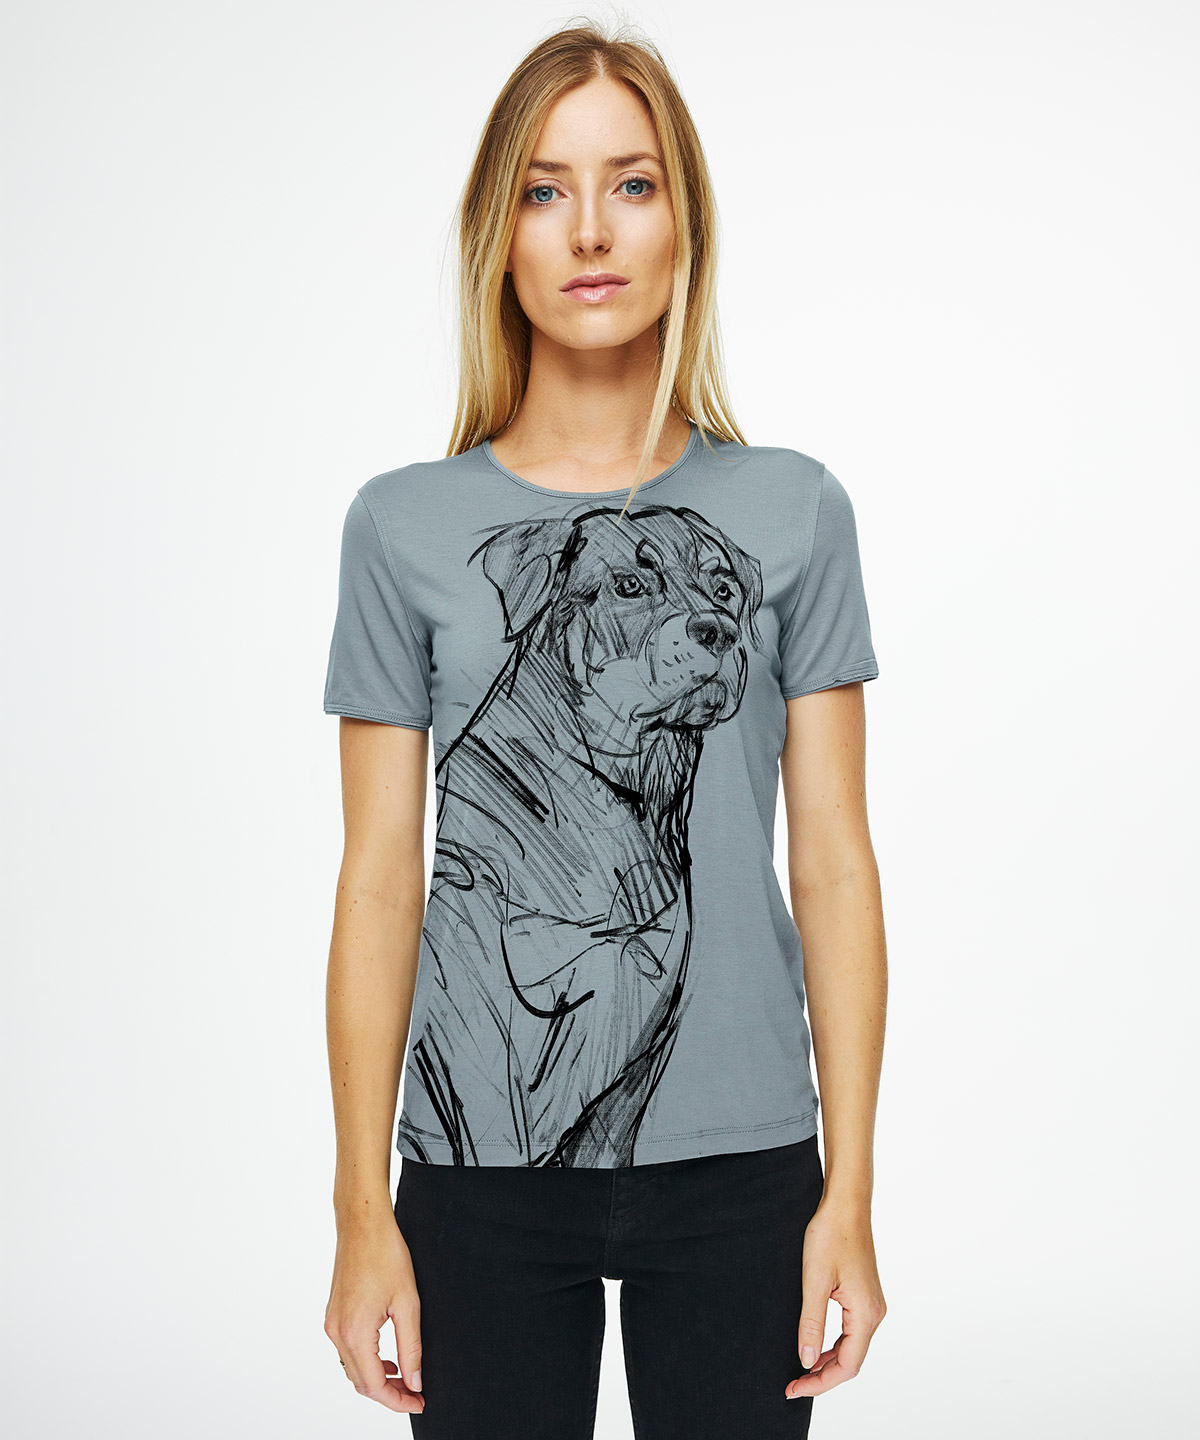 Rottweiler storm cloud t-shirt woman